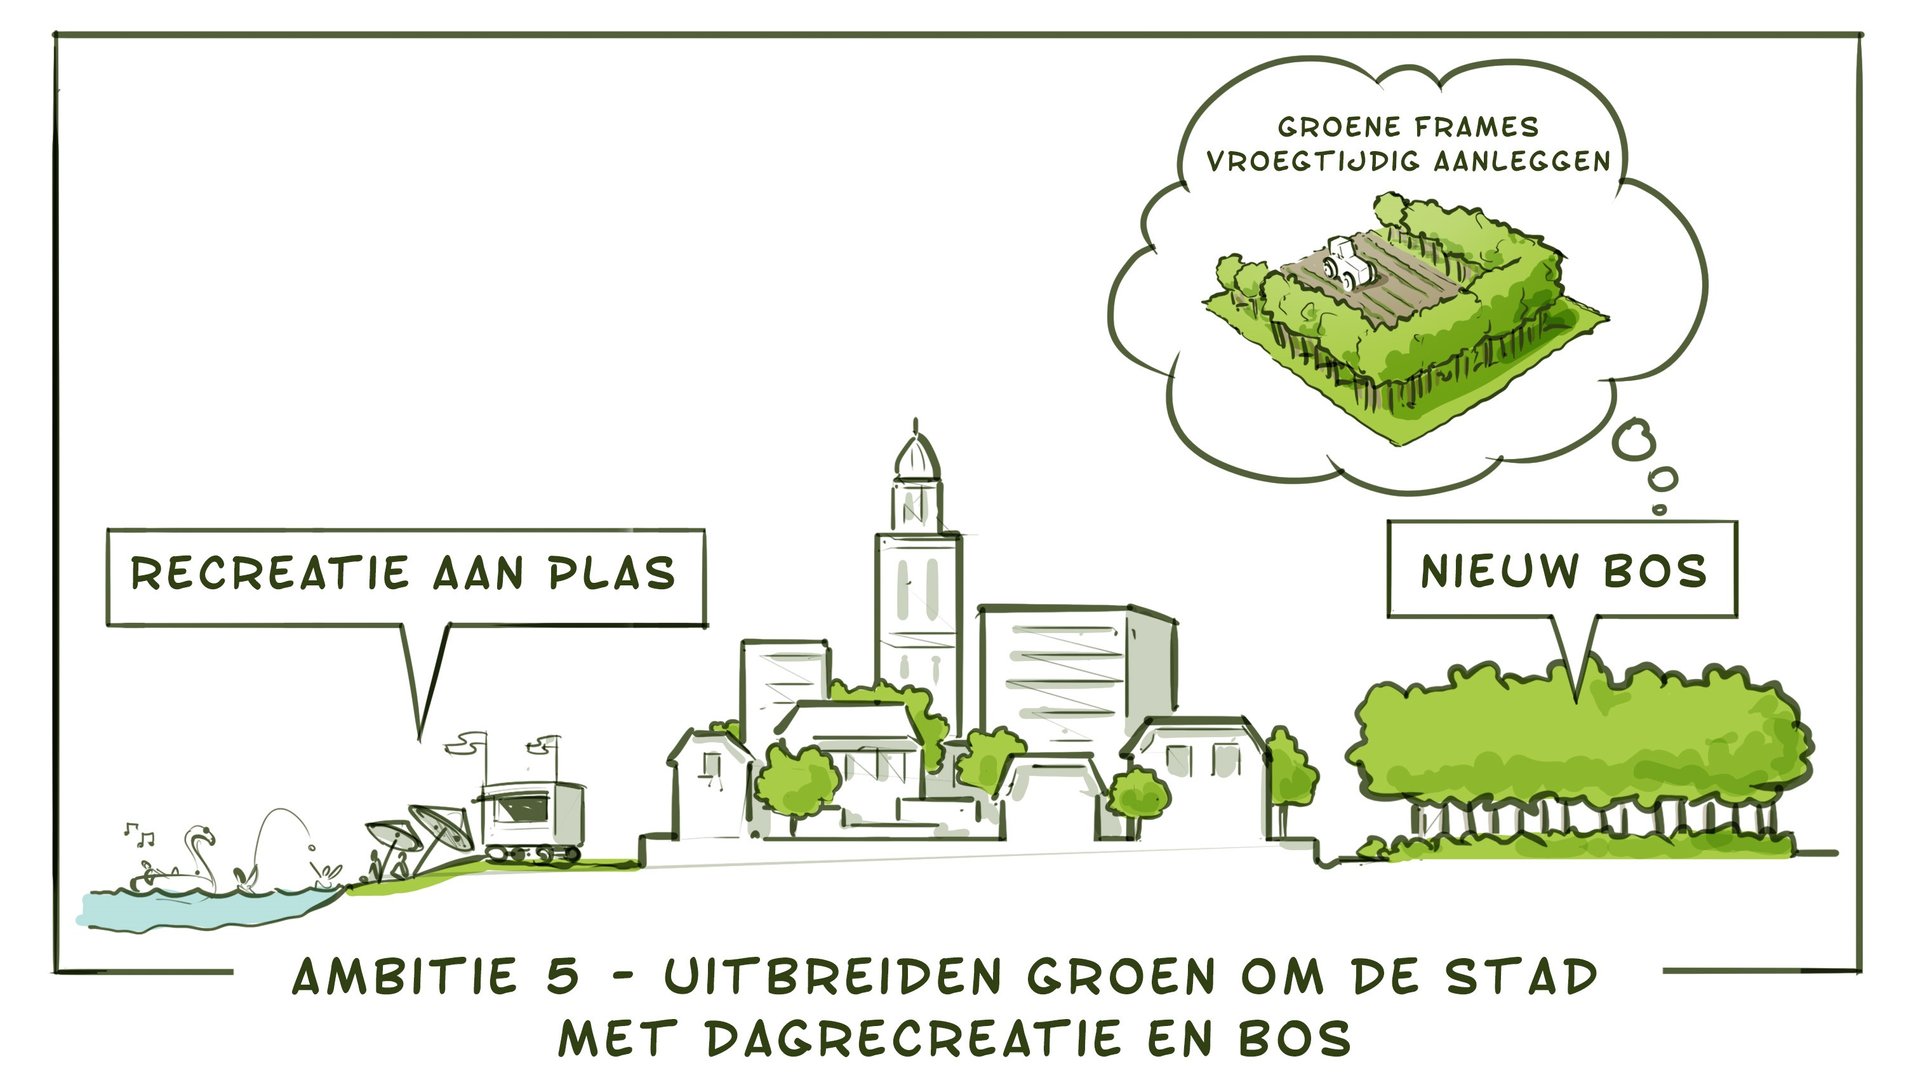 Ambitie 5 - uitbreiden groen om de stad met dagrecreatie en bos